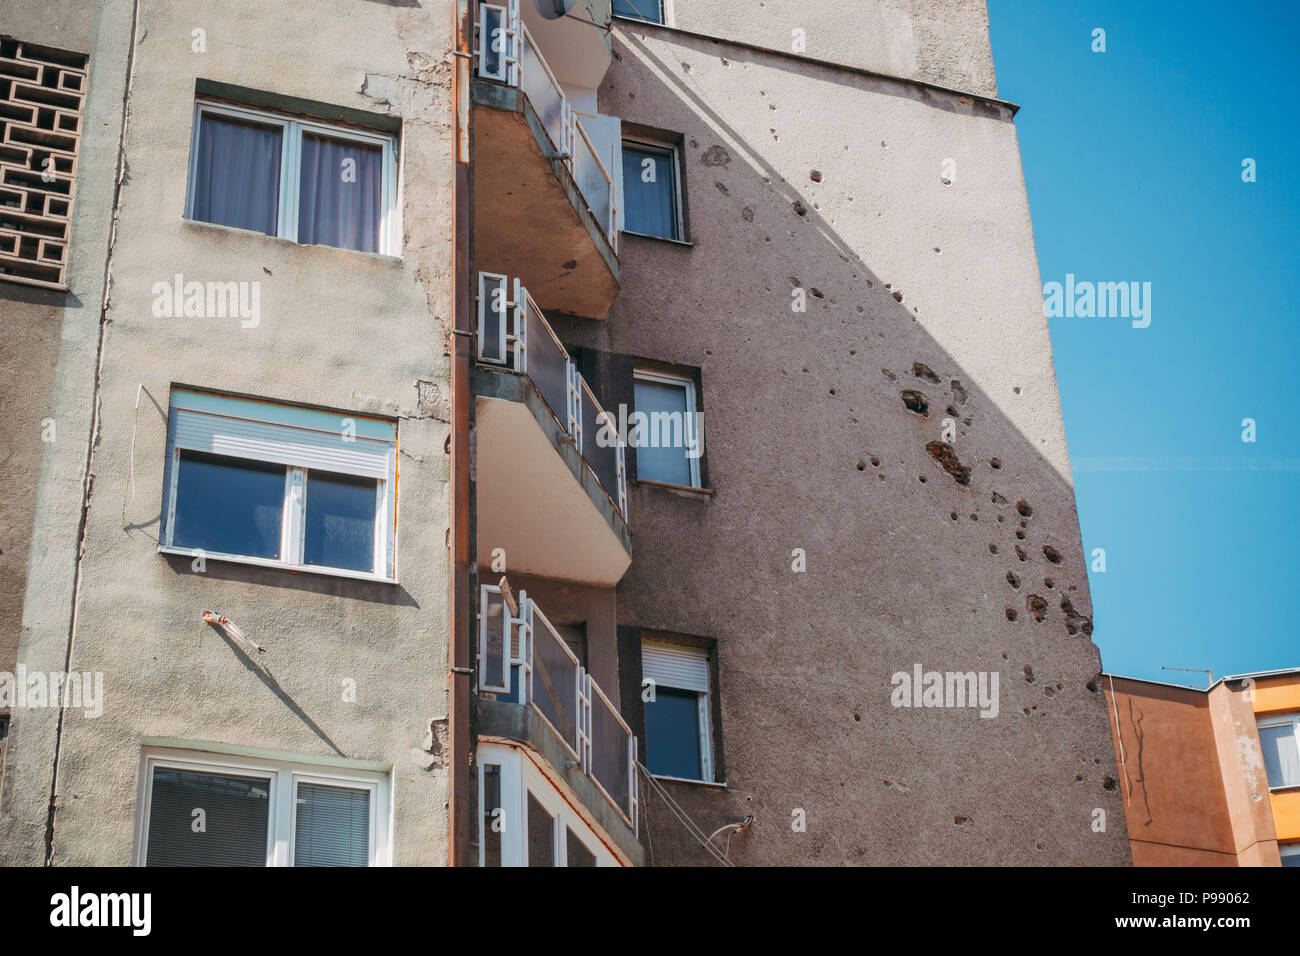 Los agujeros de metralla de shell aún marca las paredes de muchos edificios y casas en Sarajevo, Bosnia y Herzegovina, décadas después de que el asedio terminó Foto de stock